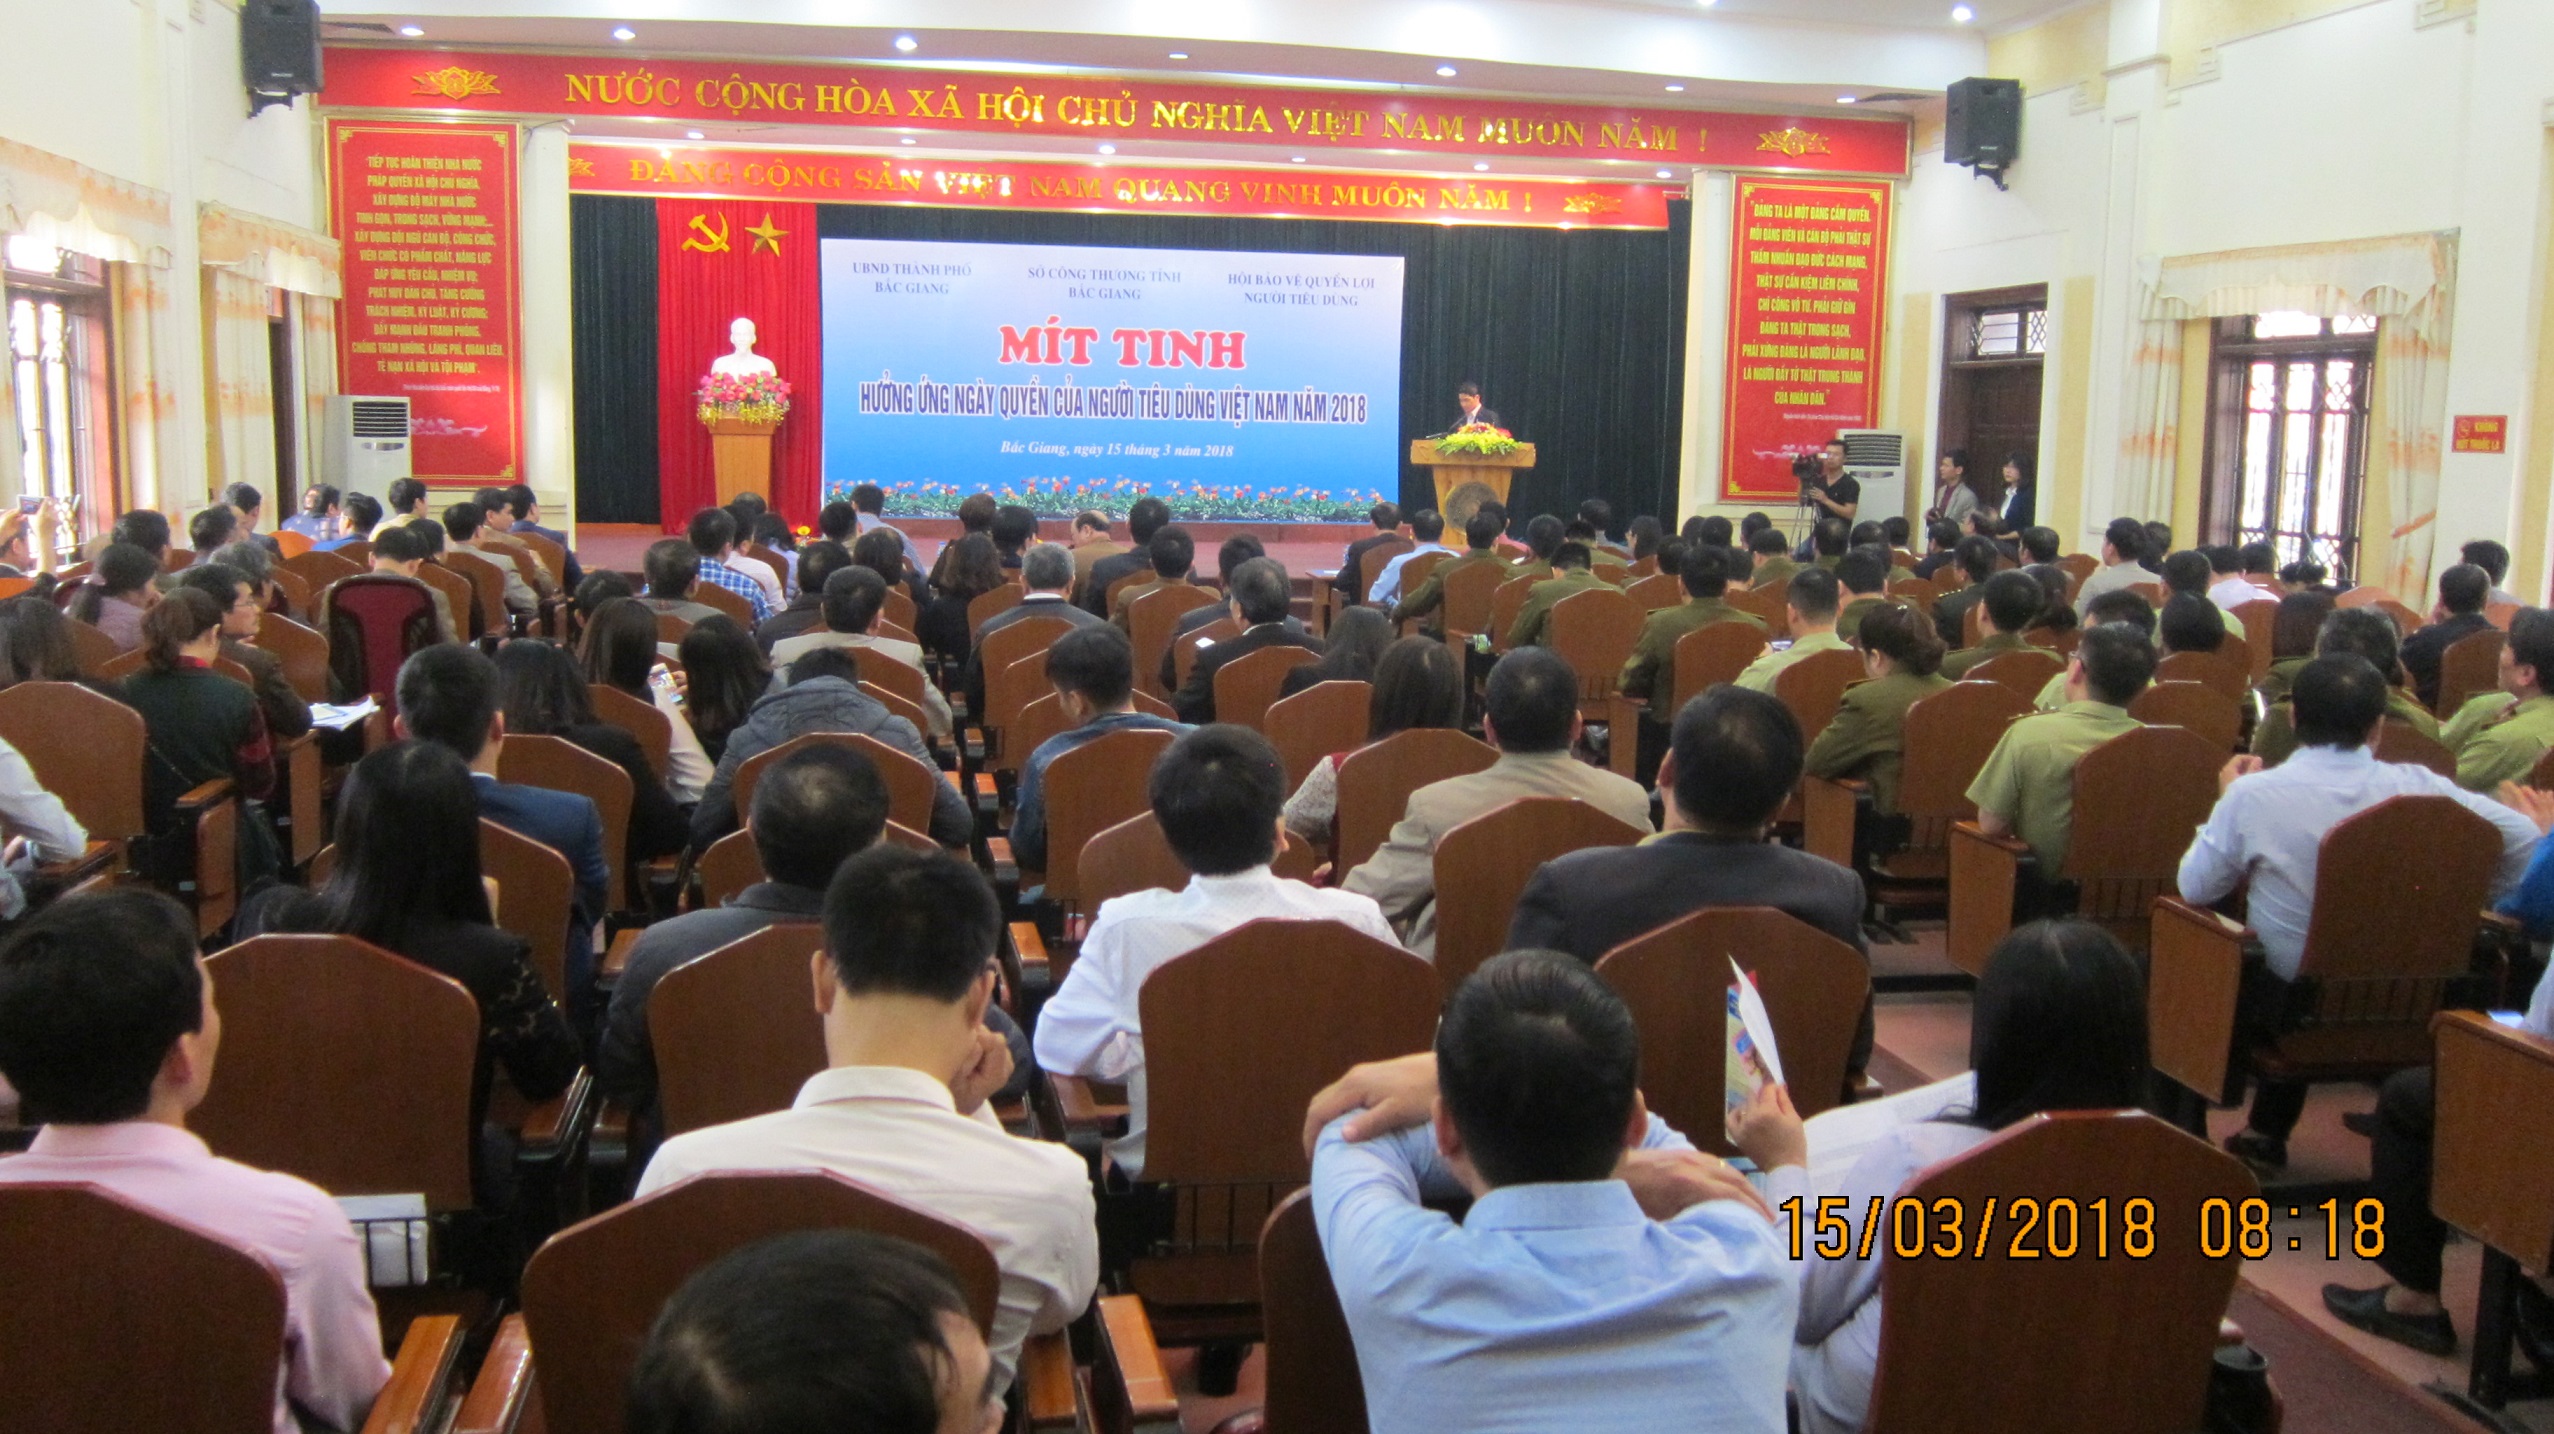 Bắc Giang: Mít tinh hưởng ứng Ngày Quyền của người tiêu dùng Việt Nam năm 2018